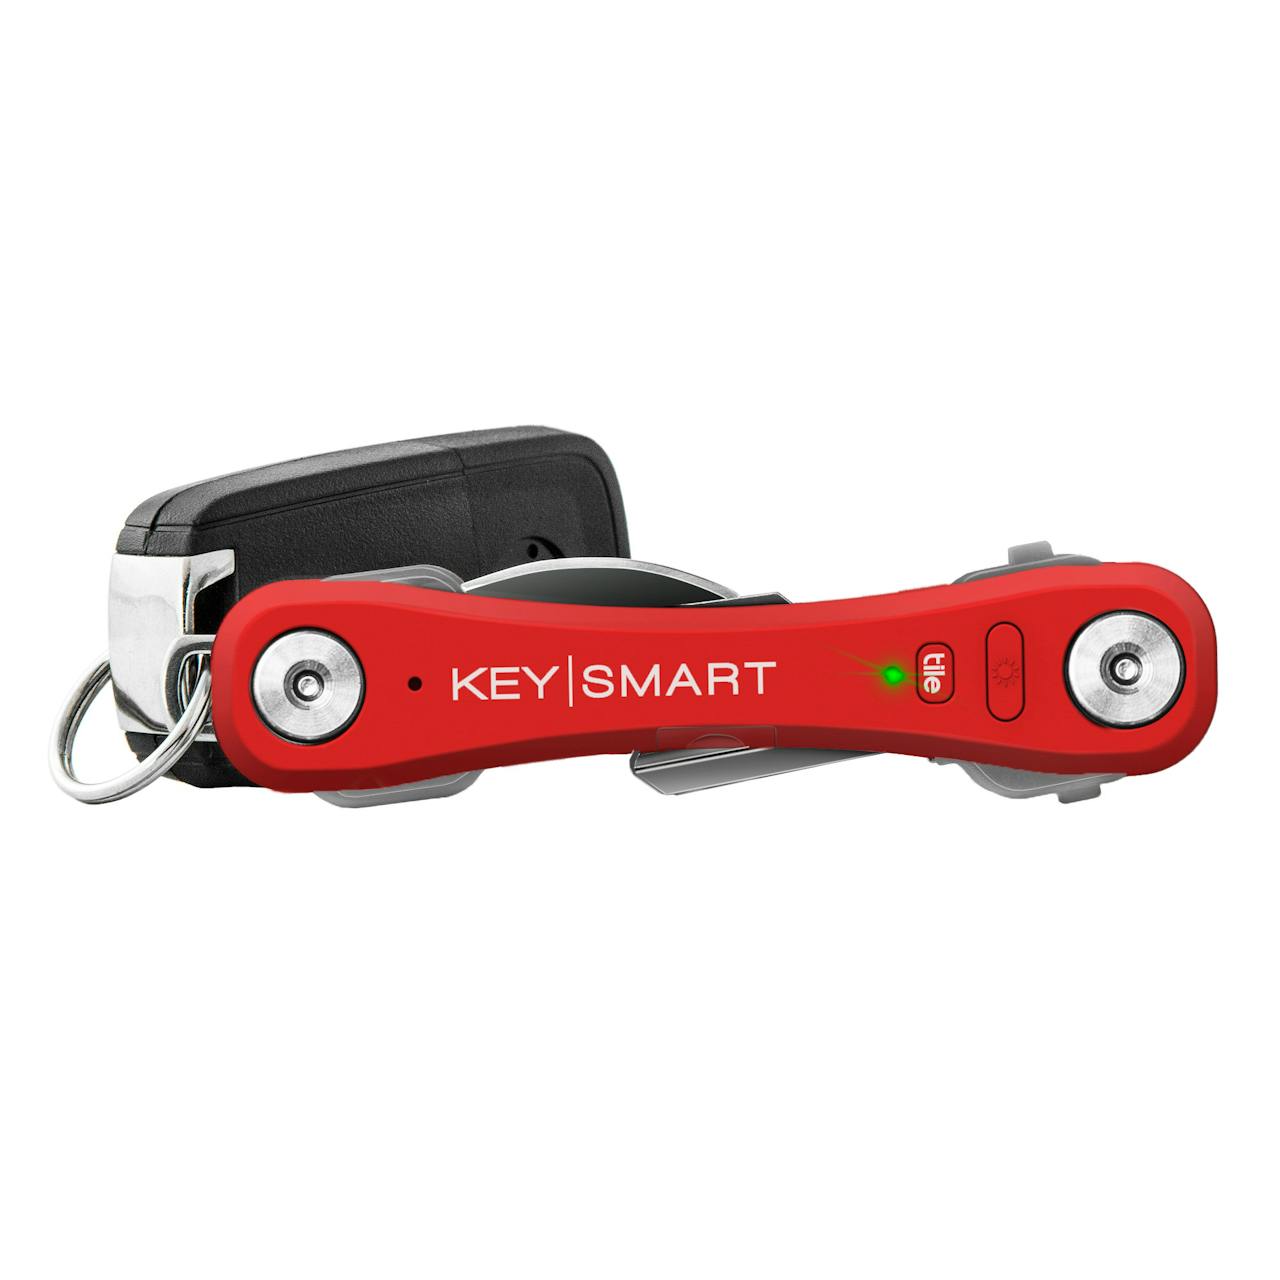 Keysmart KeySmart Pro w/ Tile Smart Location